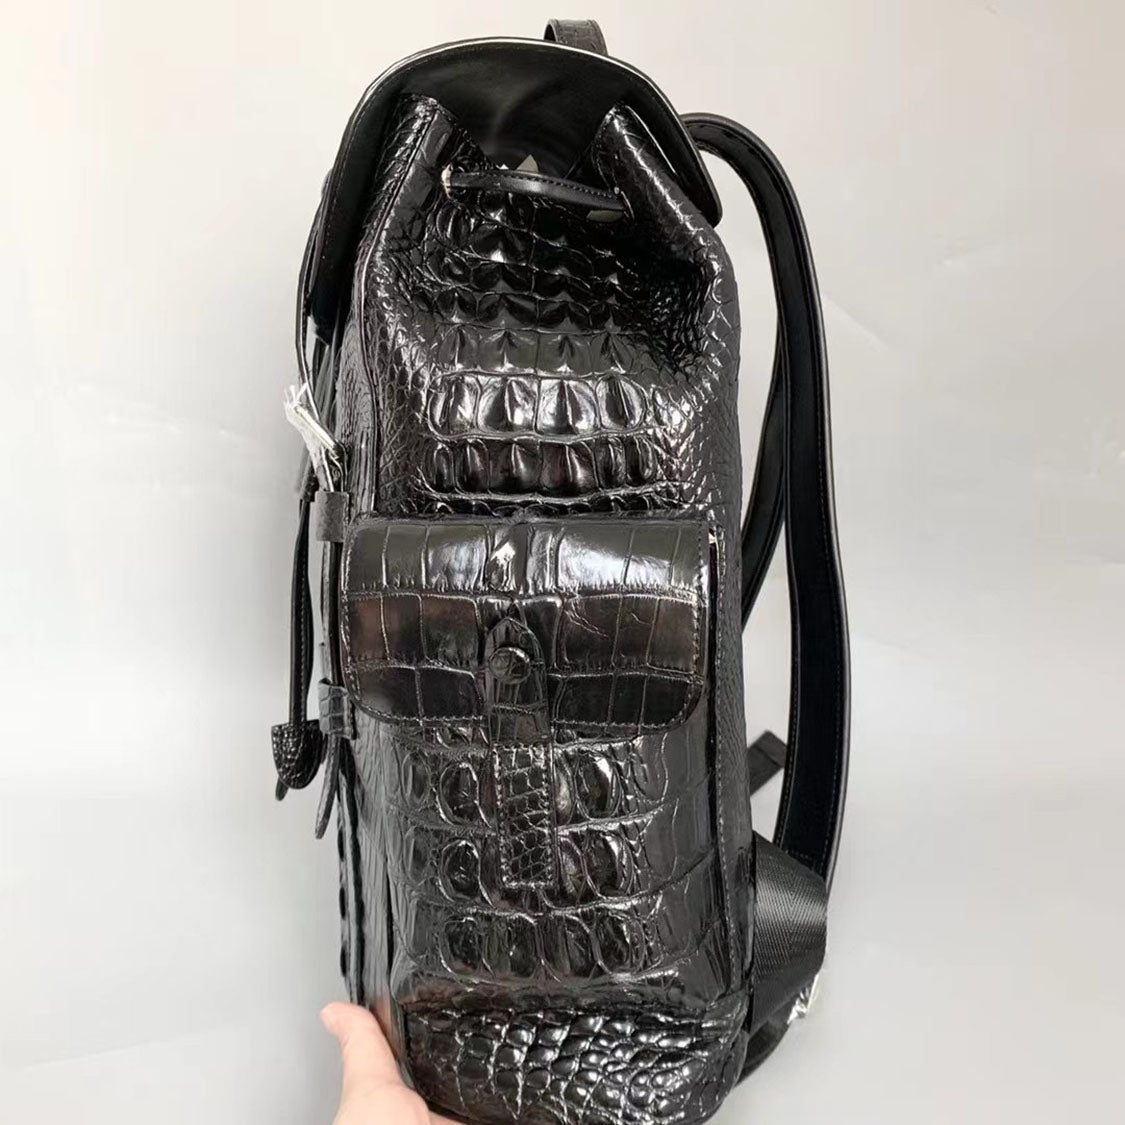 Handcrafted Crocodile Alligator Leather Backpack Shoulder Bag Travel Bag Black